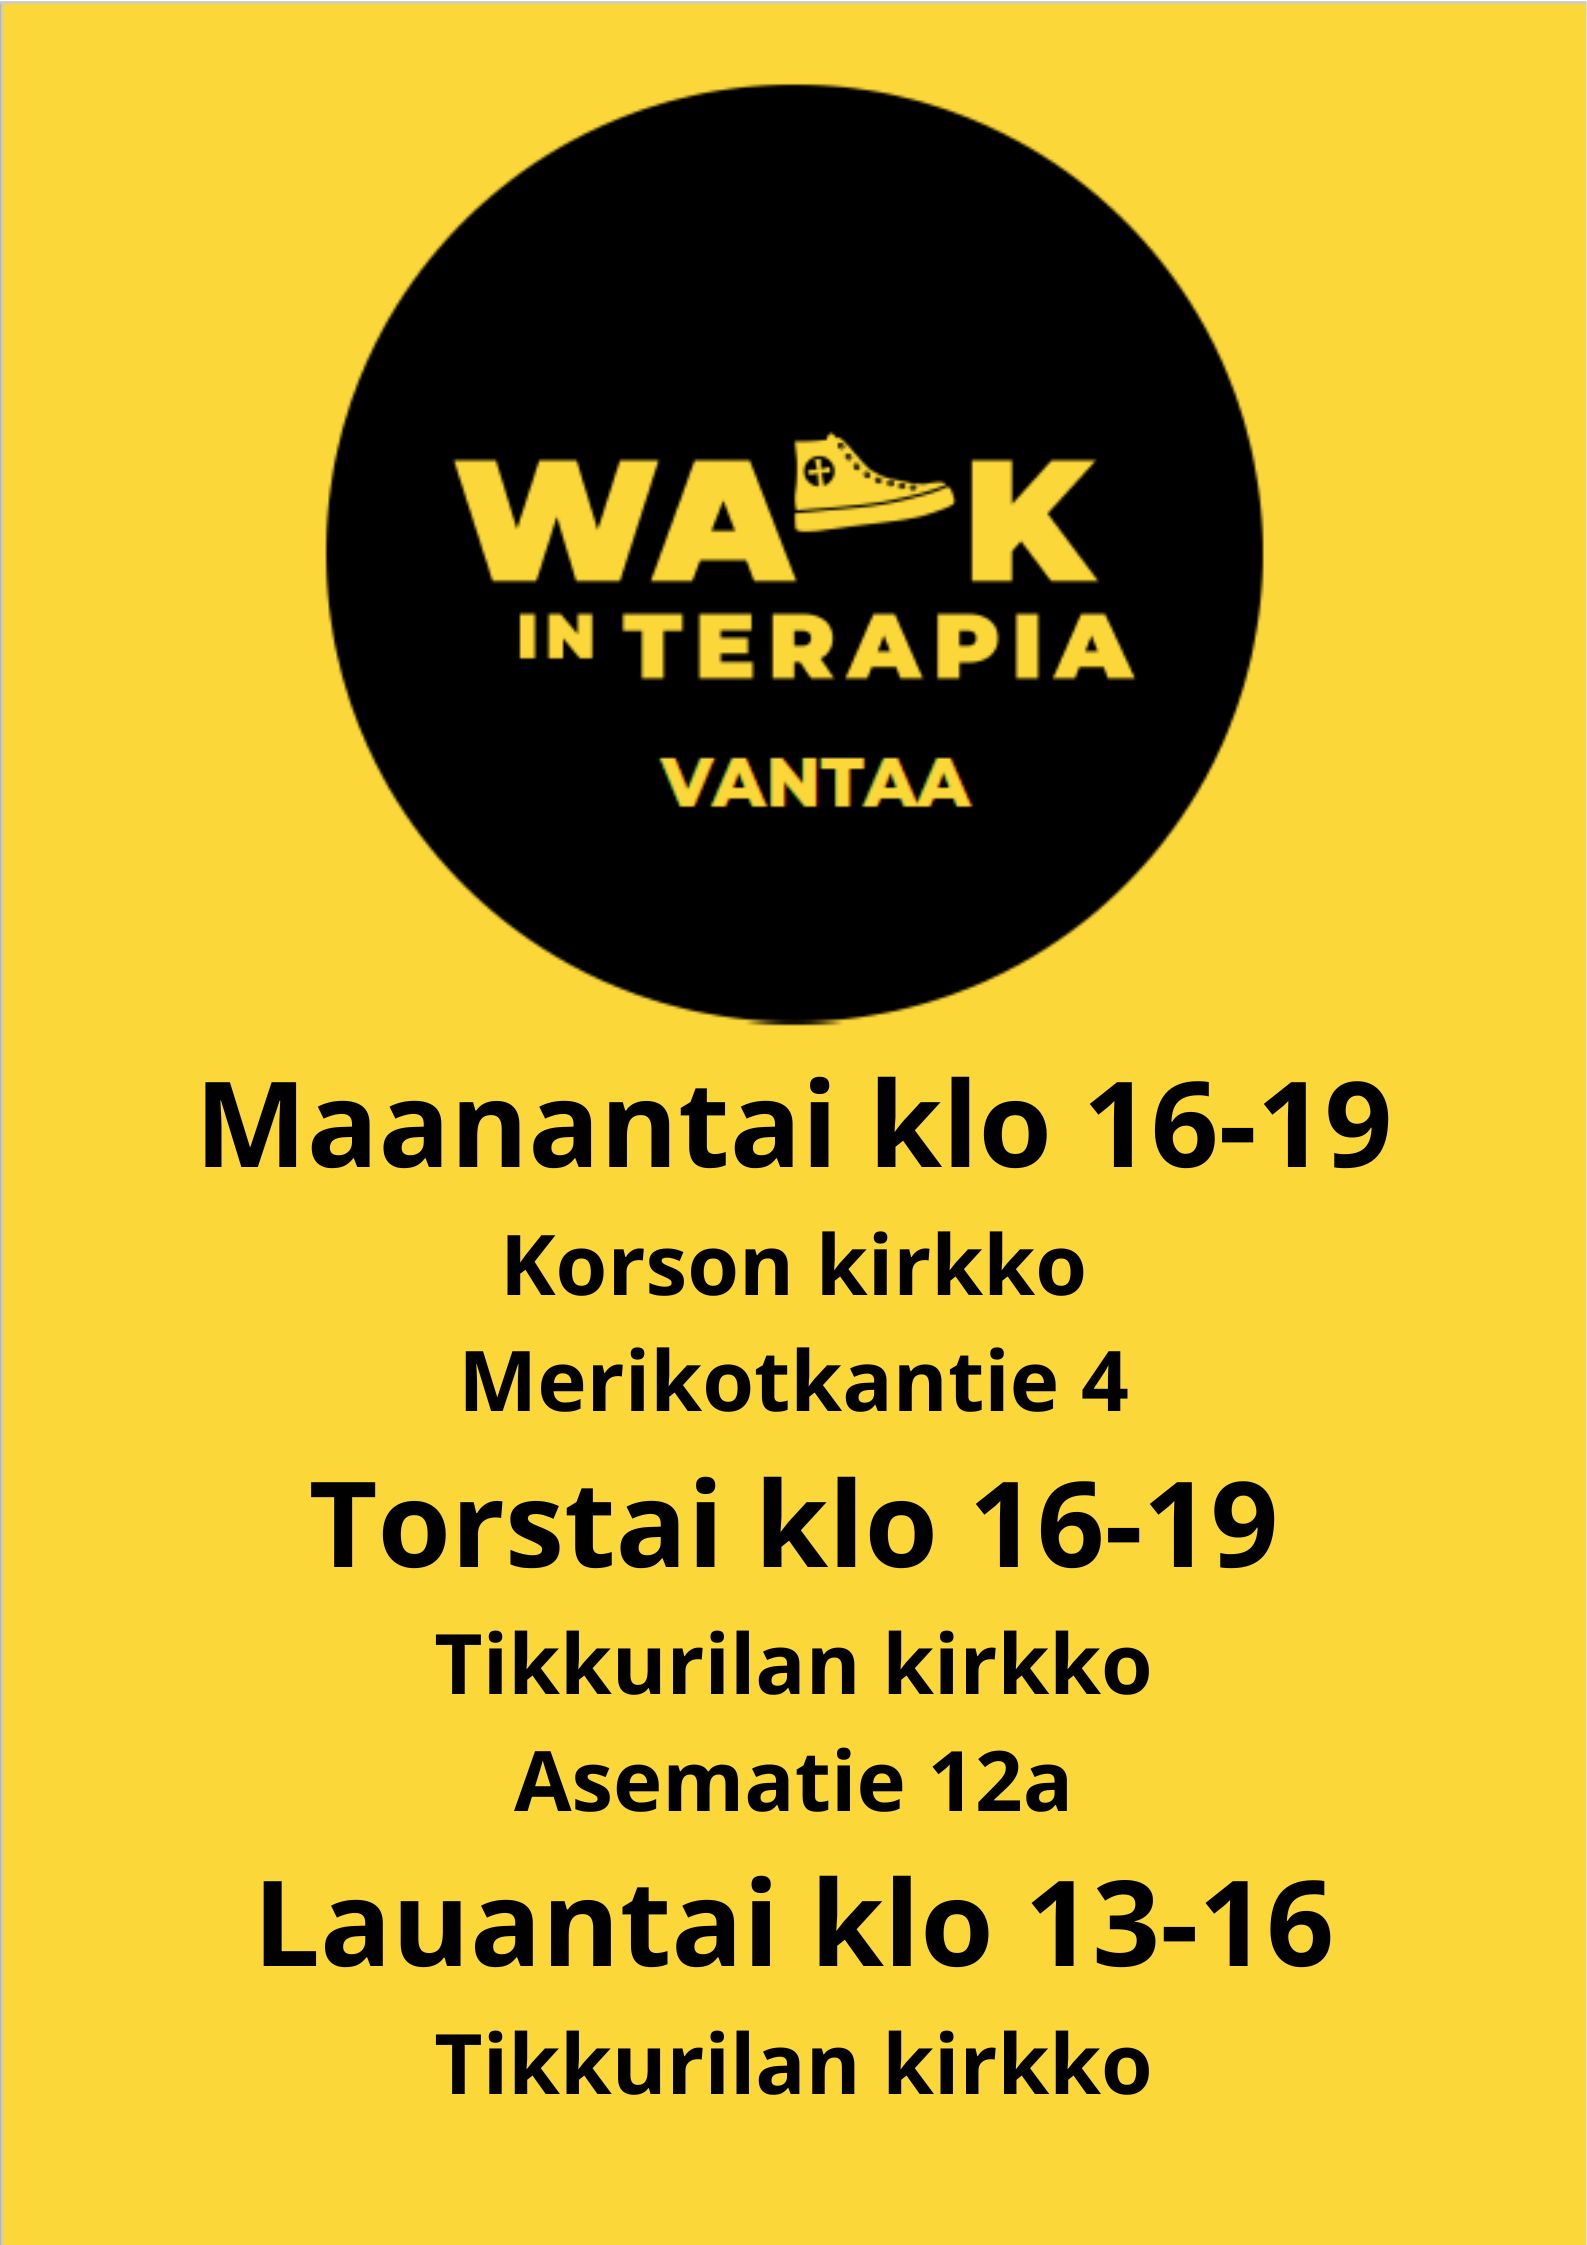 Walk in -terapia Vantaalla kevätkaudella 2023. Ajat on esitetty sivun tekstissä.